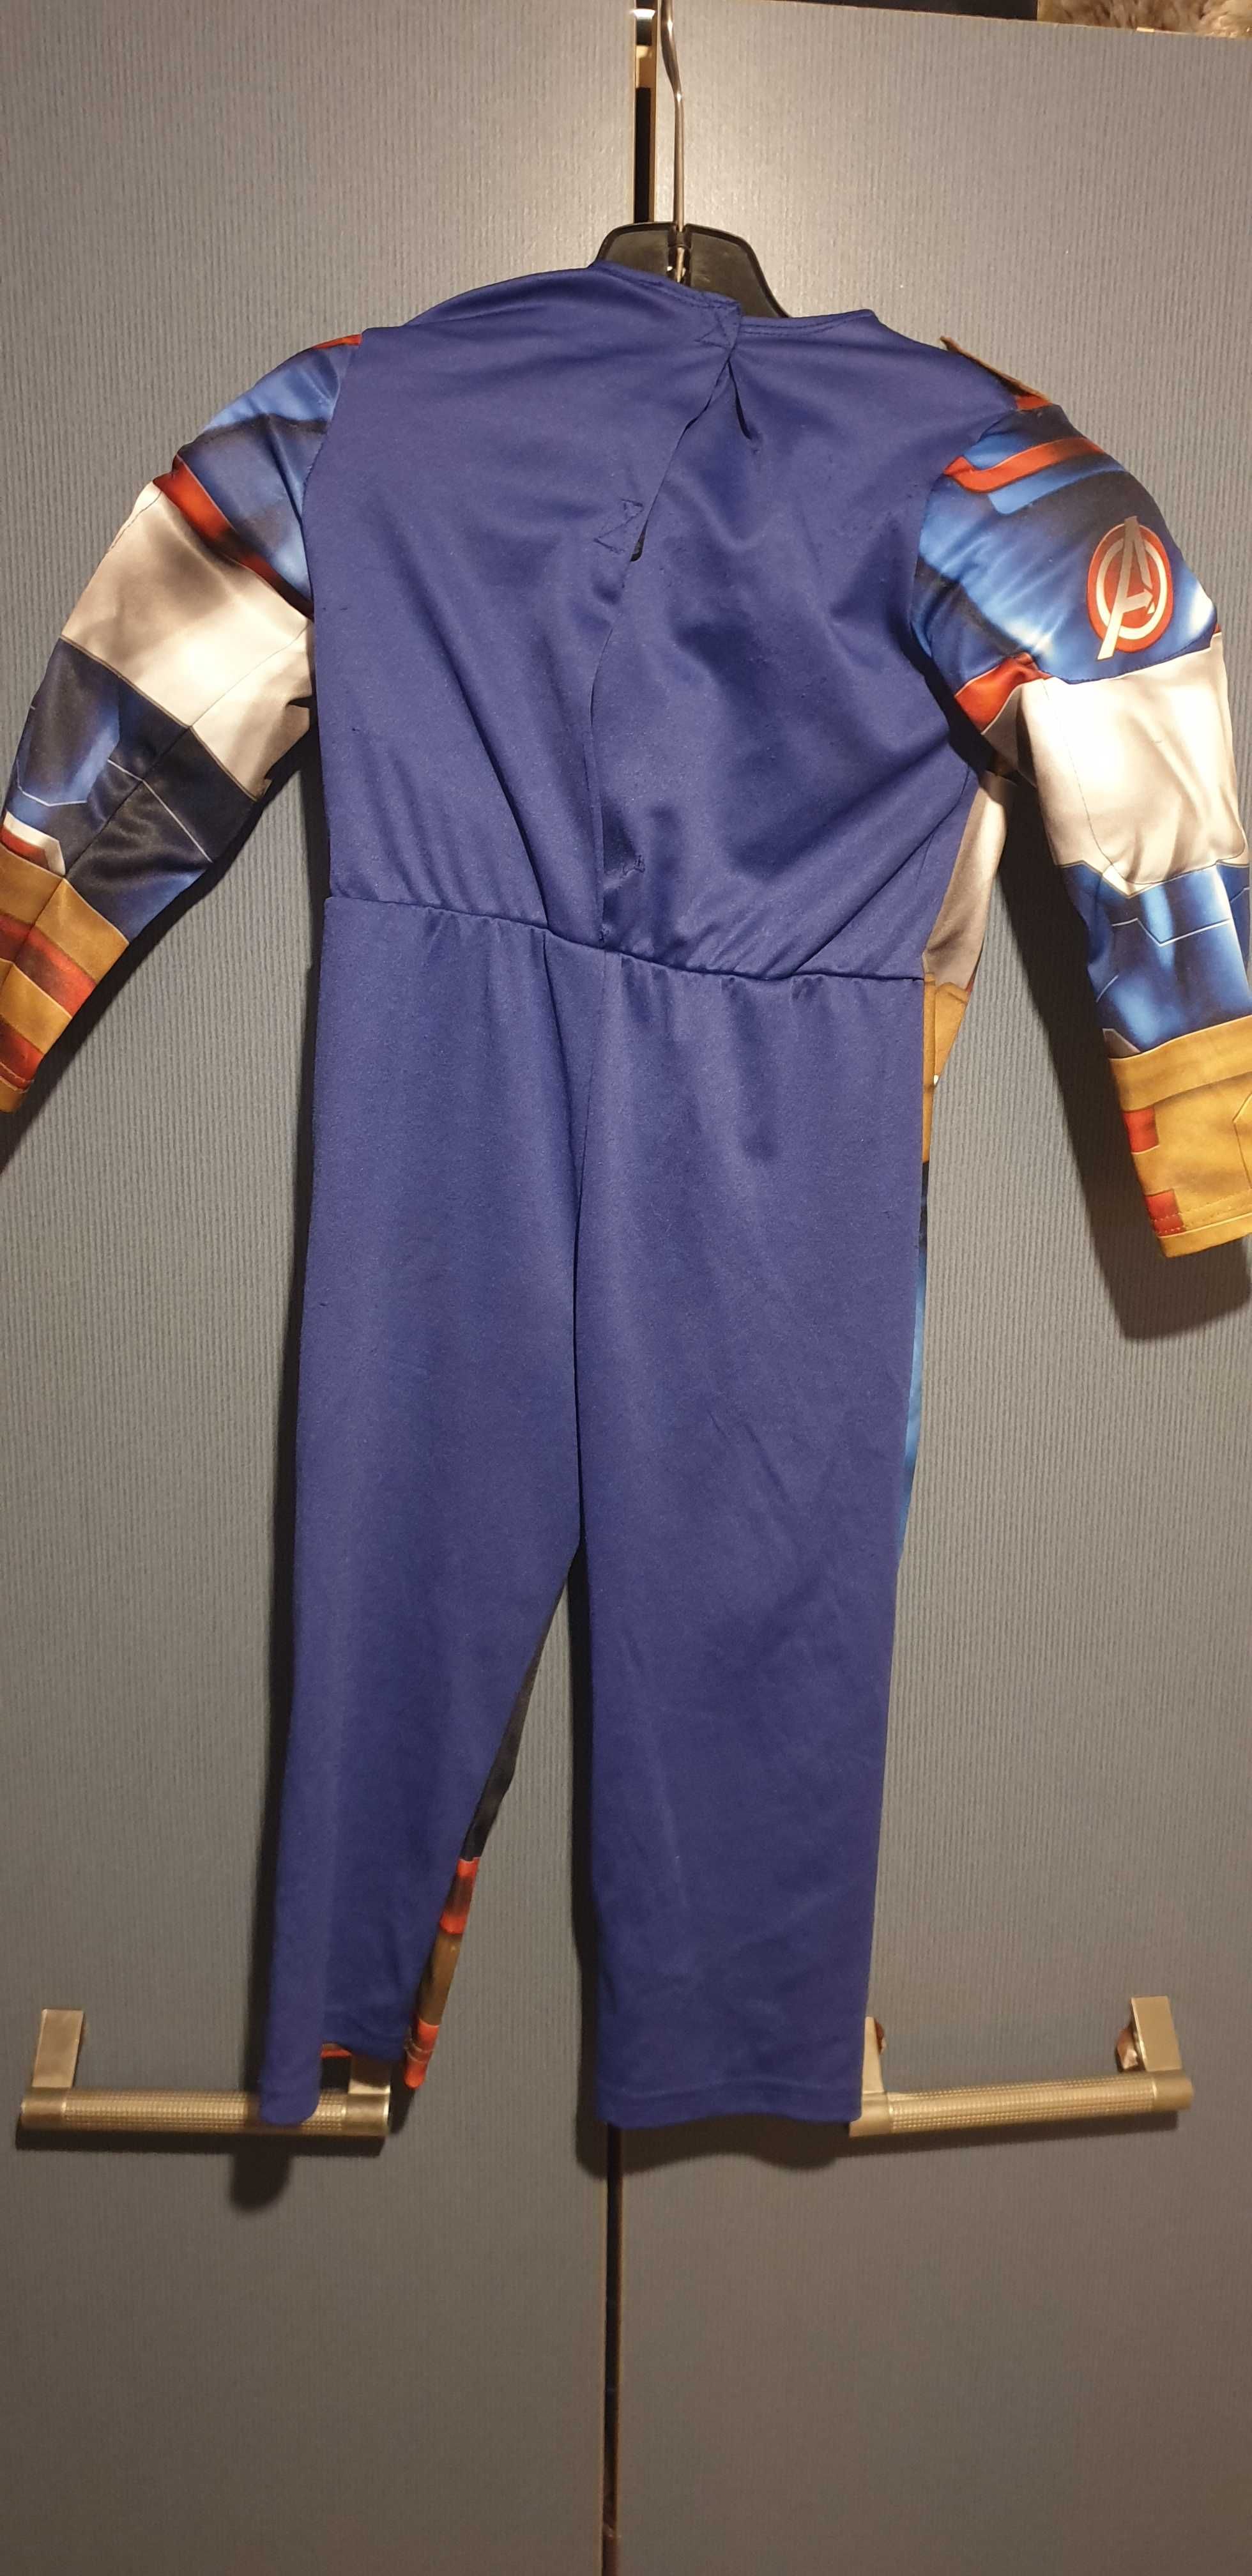 Оригинален детски цял костюм - Капитан Америка с мускули, маска и щит